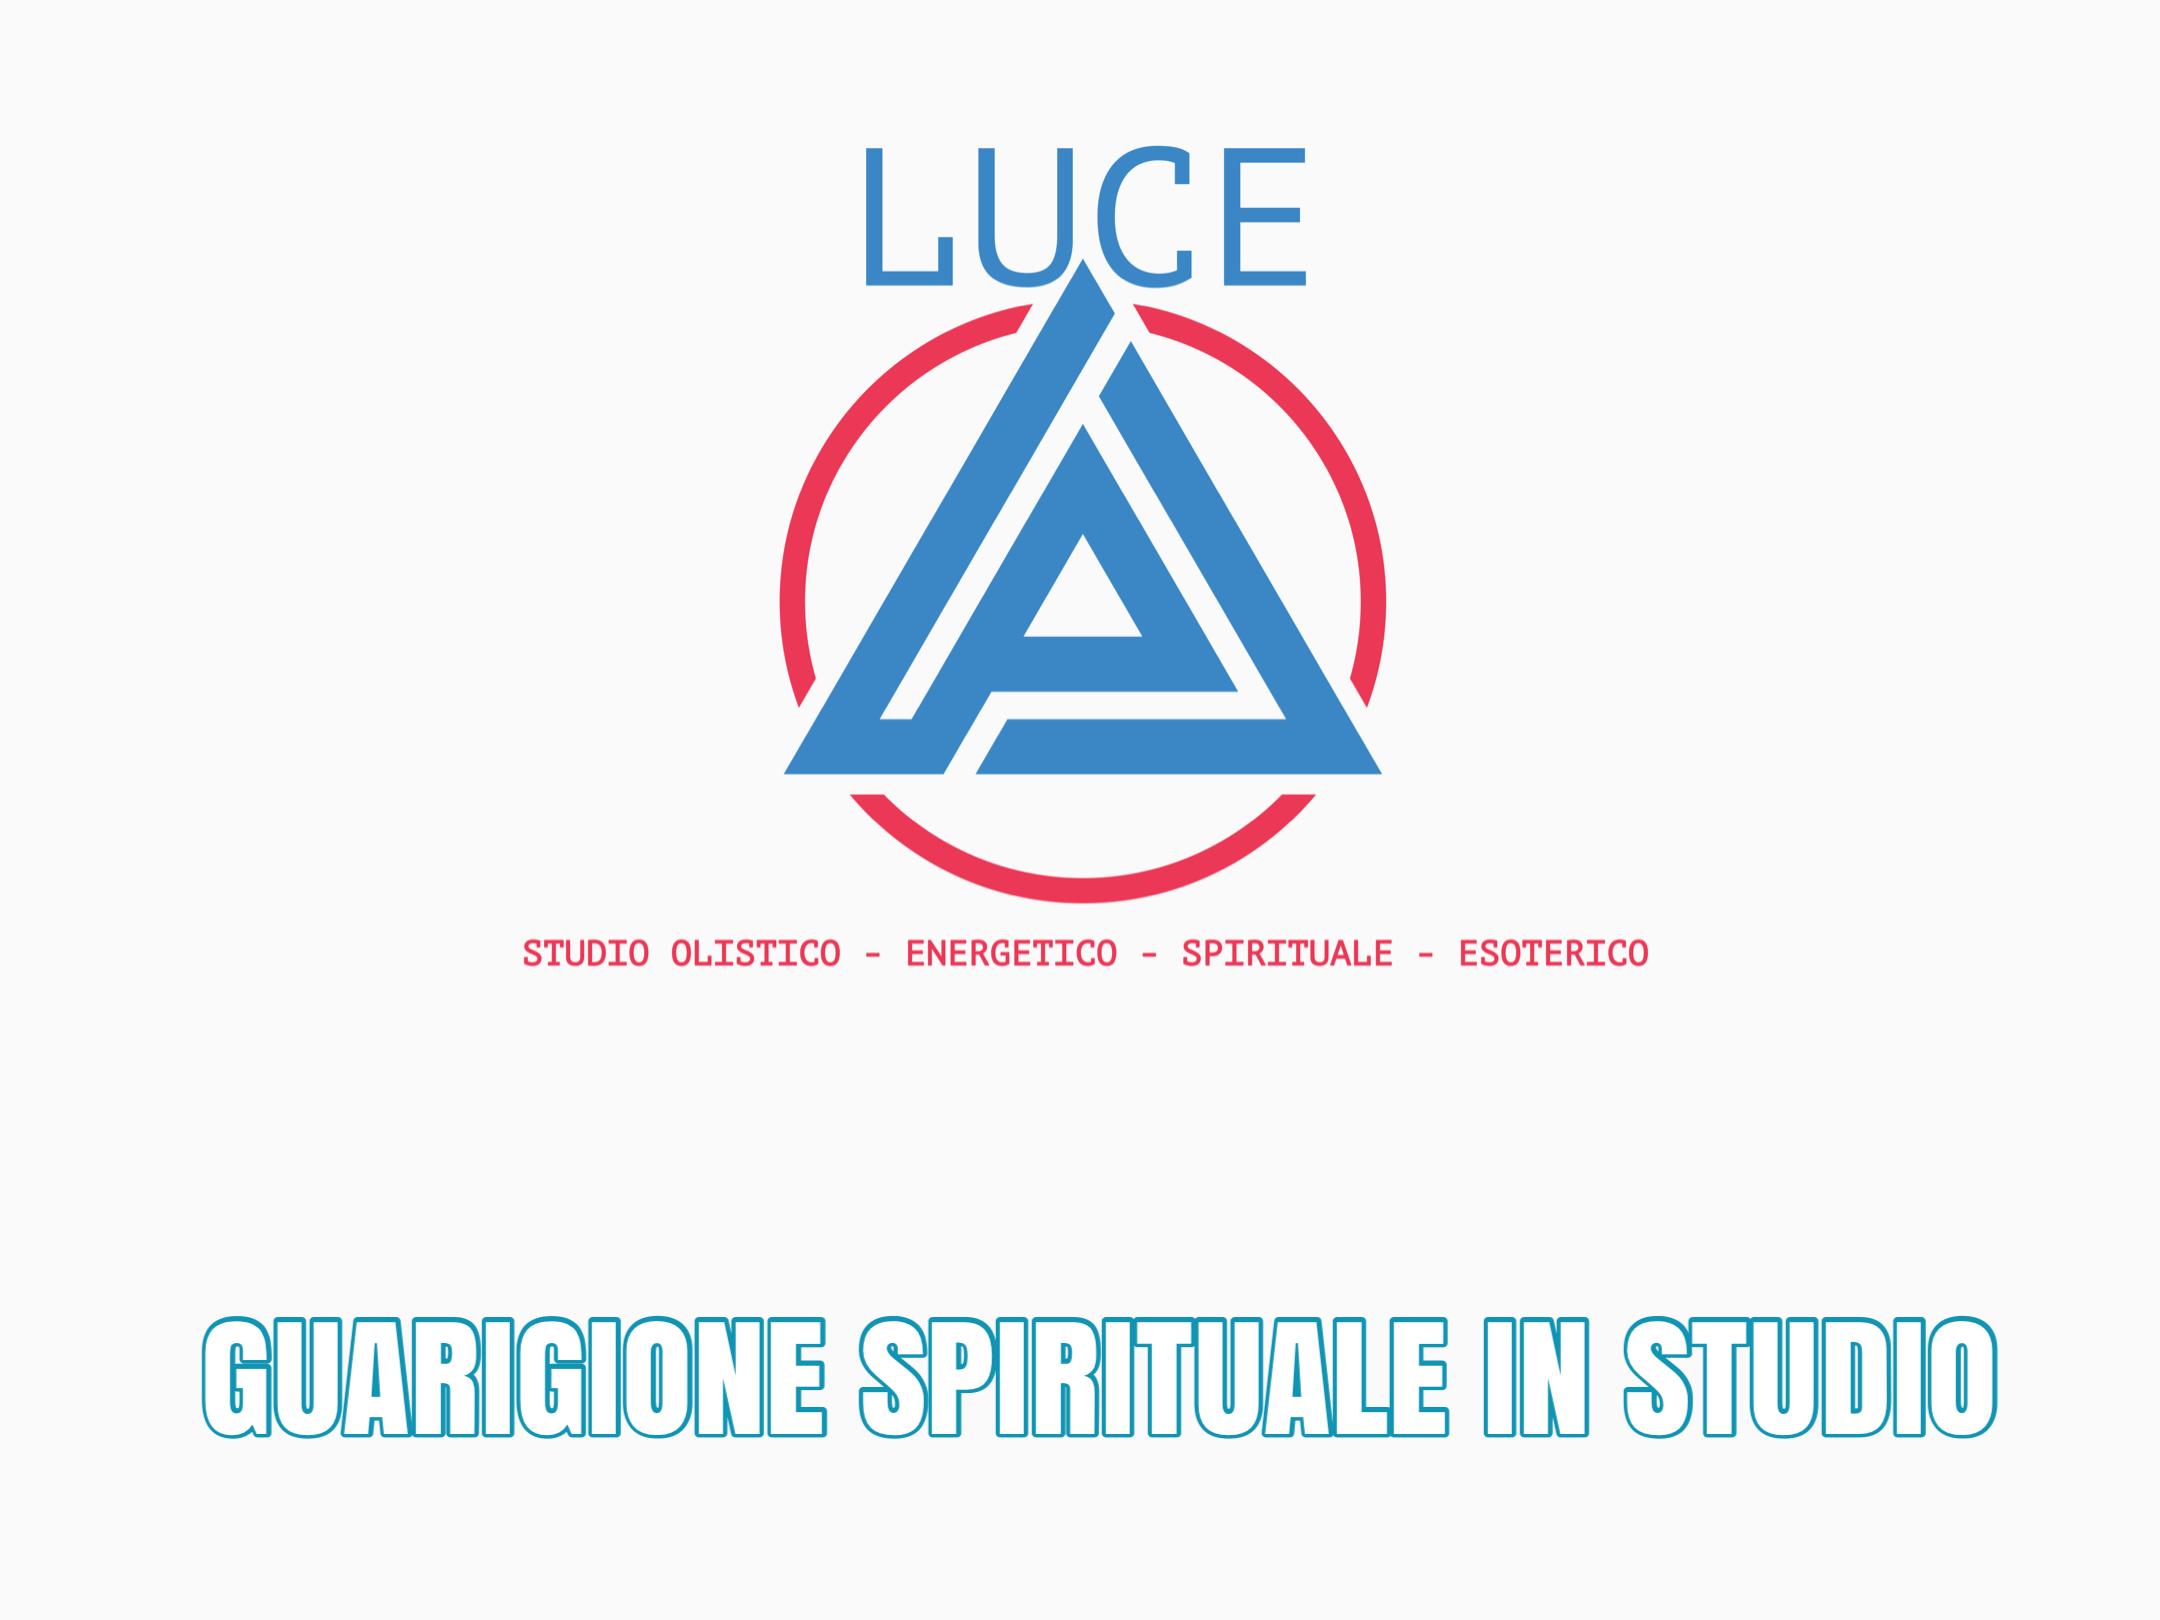 GUARIGIONE SPIRITUALE IN STUDIO